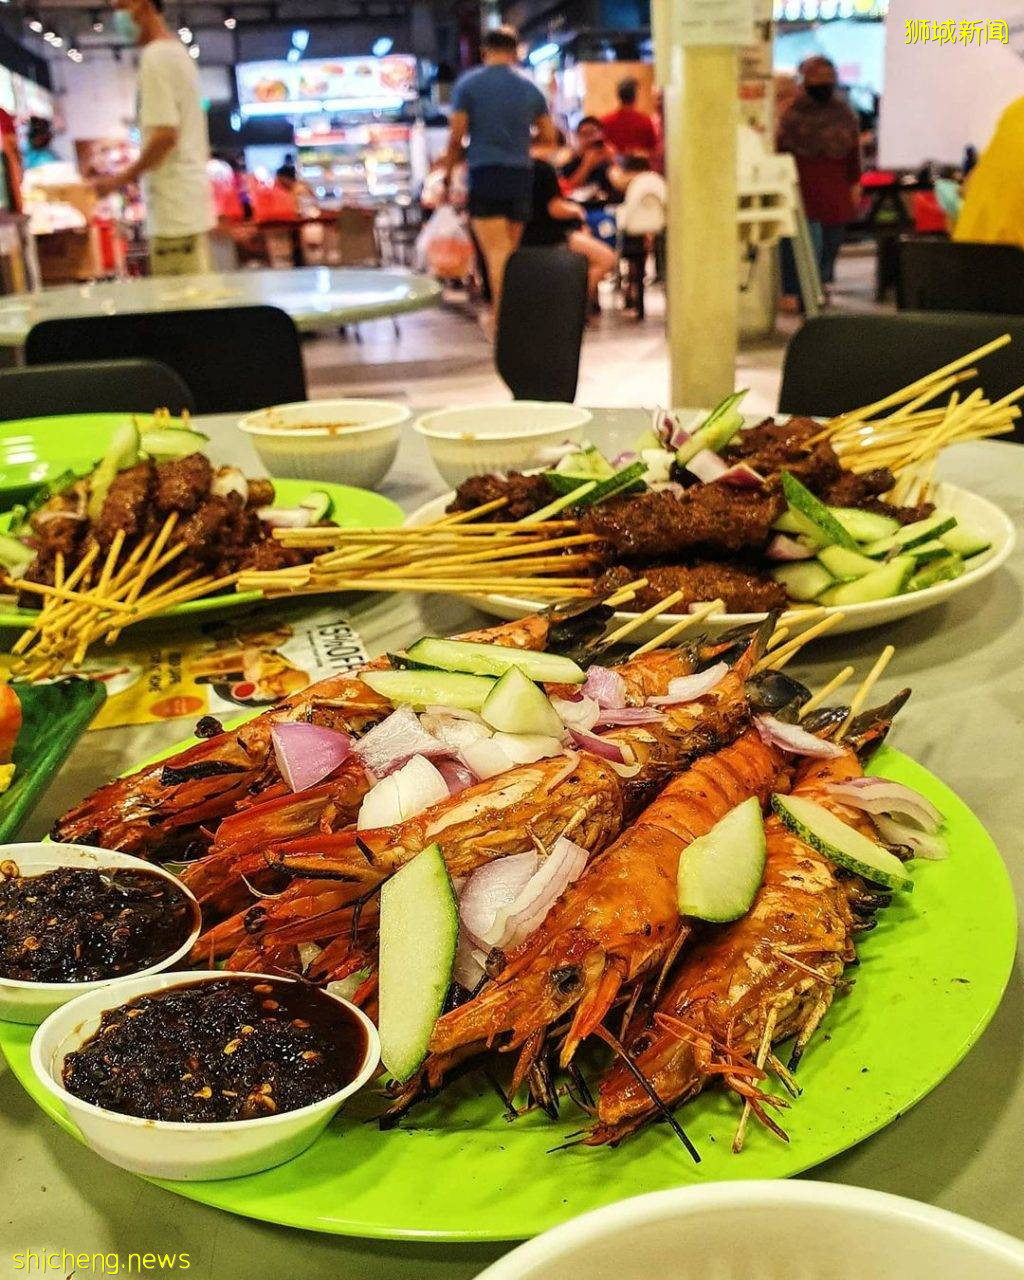 S$0.80沙爹送到家🔥 Satay Sumang招牌沙爹+海鮮串燒套餐！在家也能吃到街邊美食啦